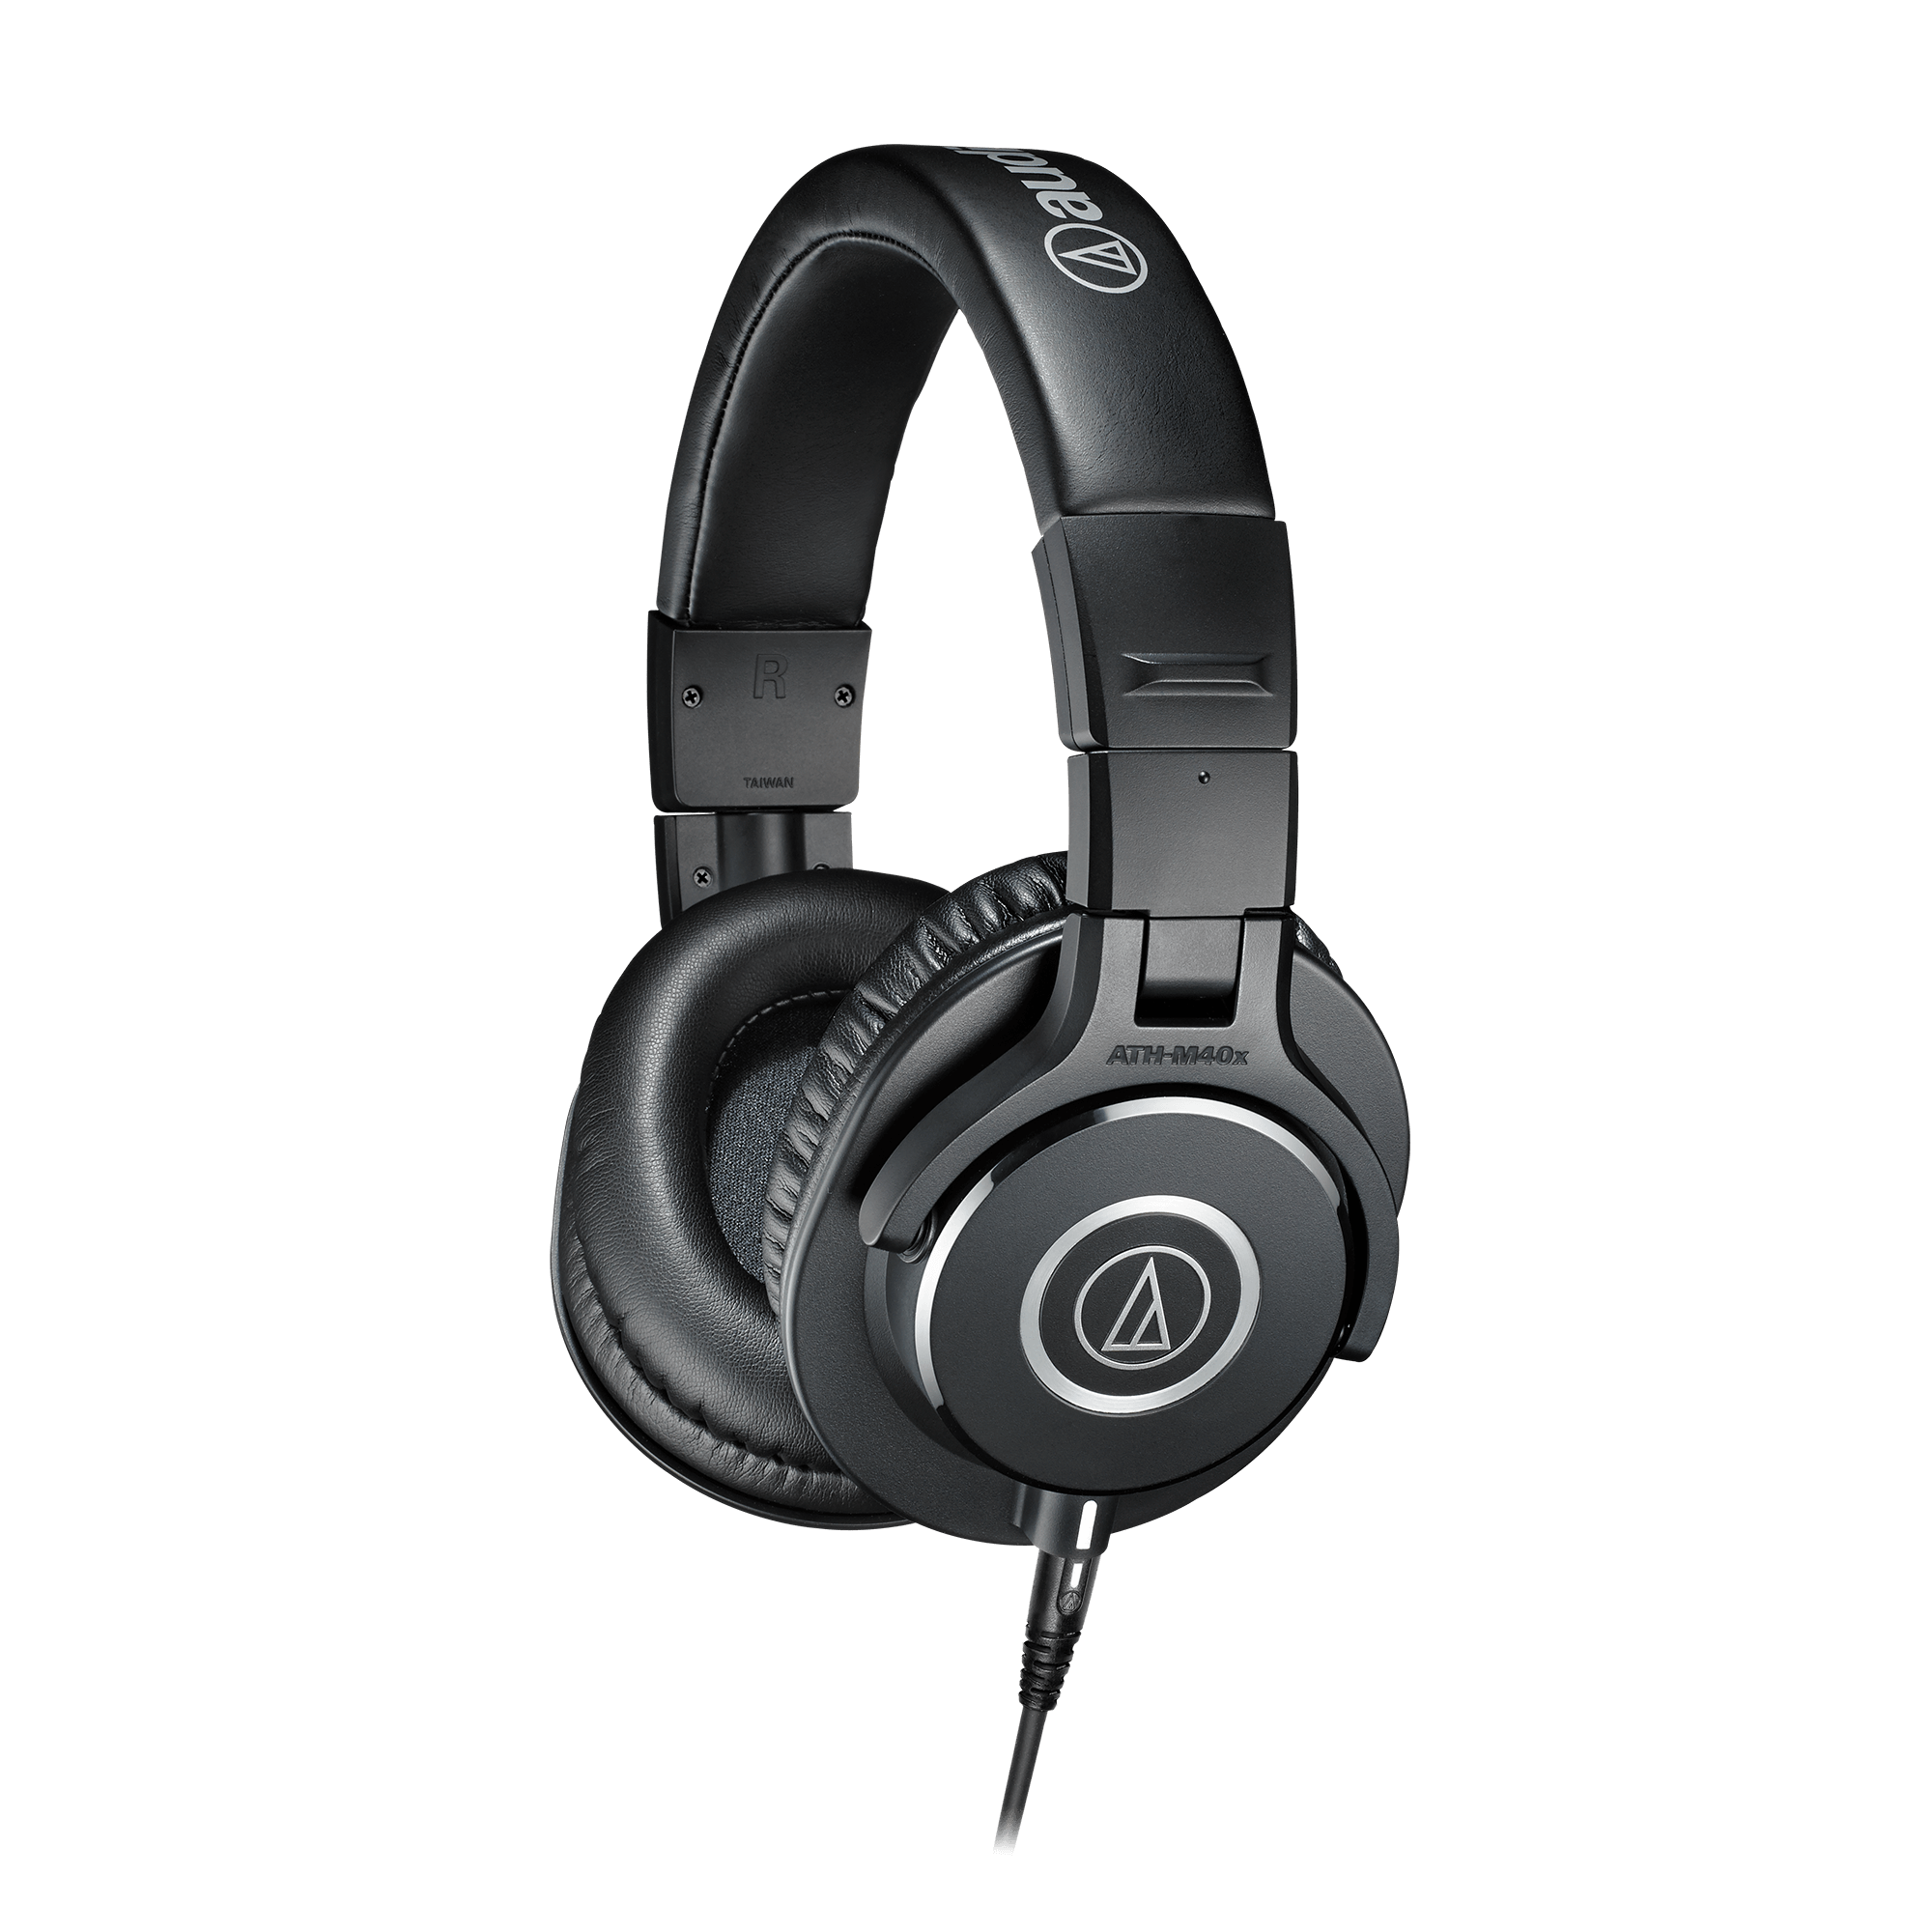 Audio-Technica ATH-M40X Casque Audio Professionnel avec câble détachable Noir & Stagg 3 m Câble Microphone XLR XLR de Haute Qualité Noir 